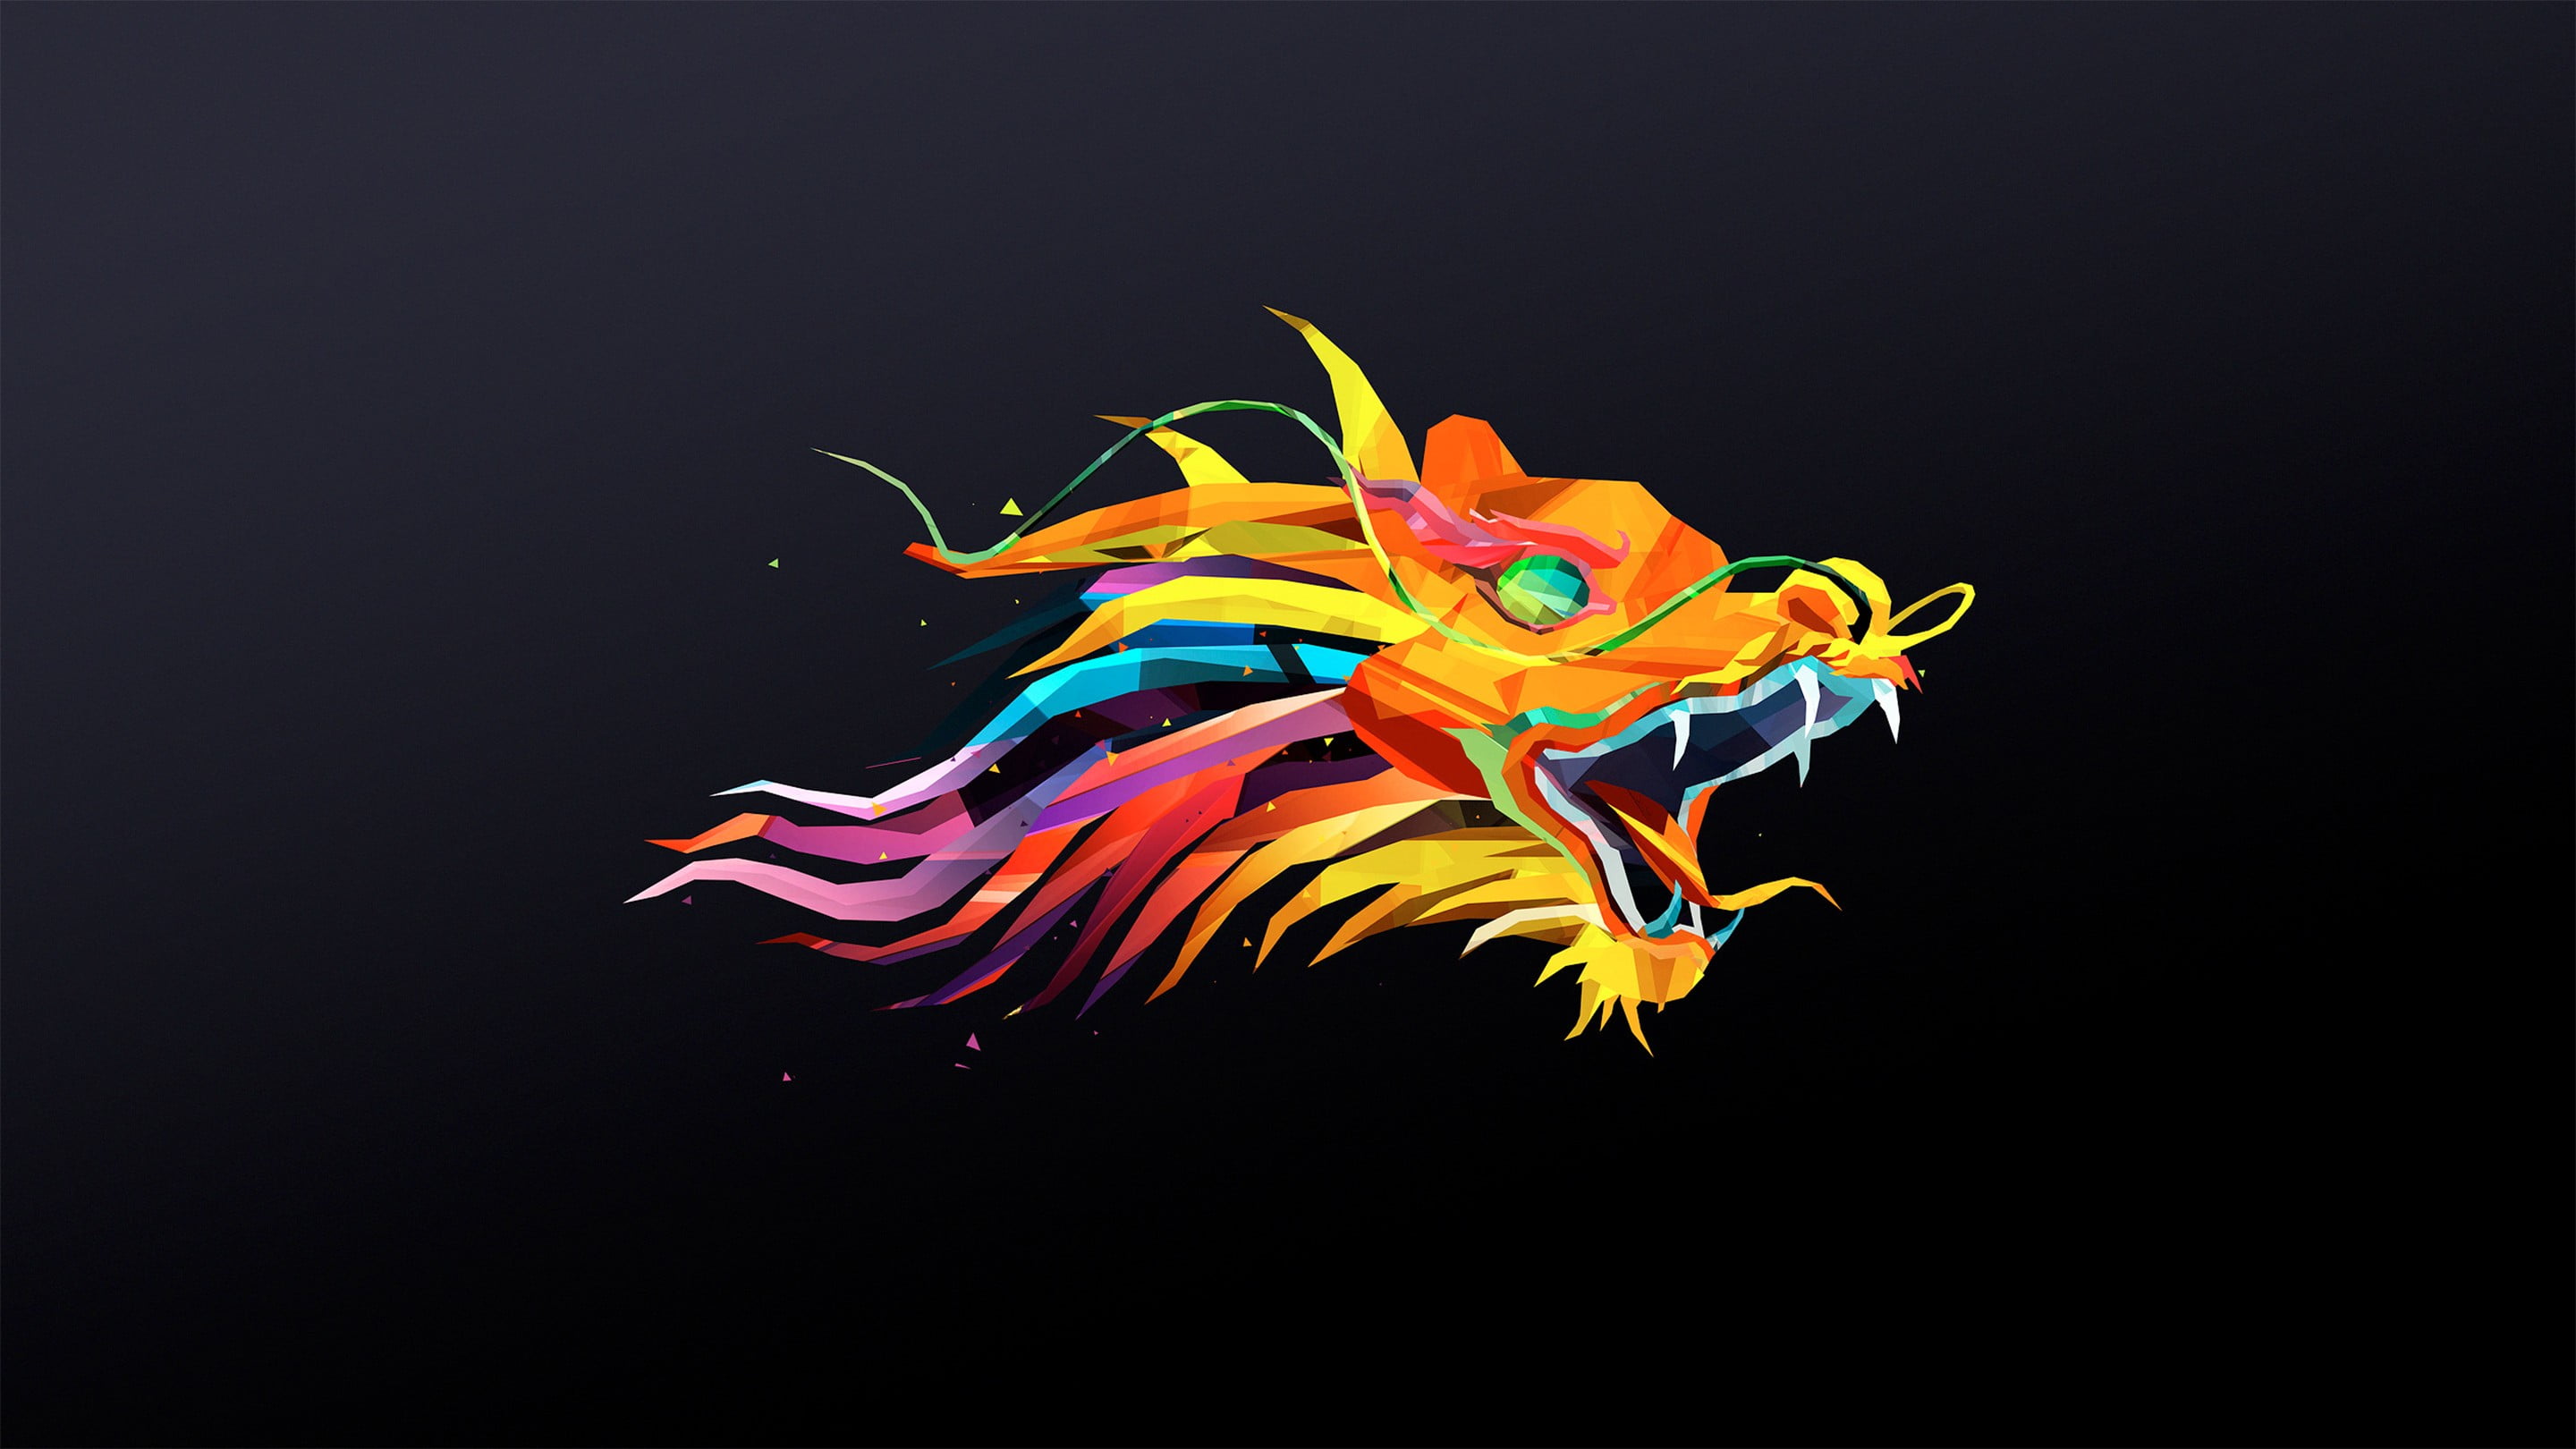 multicolored dragon digital wallpaper, Abduzeedo, dragon, digital art, Justin Maller